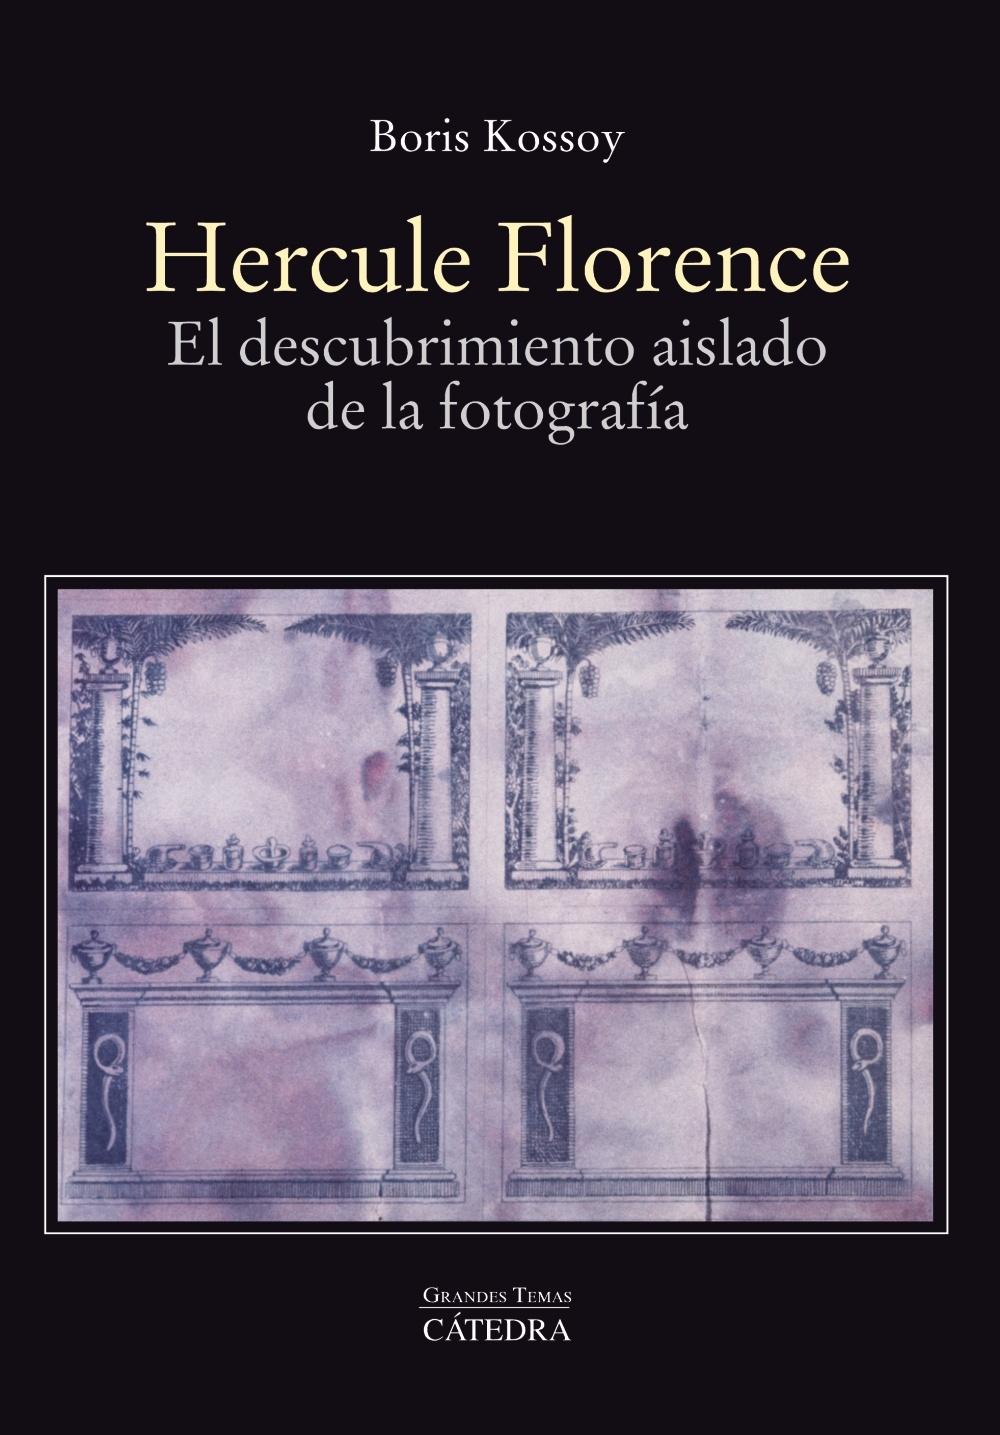 HERCULE FLORENCE "El descubrimiento aislado de la fotografía"